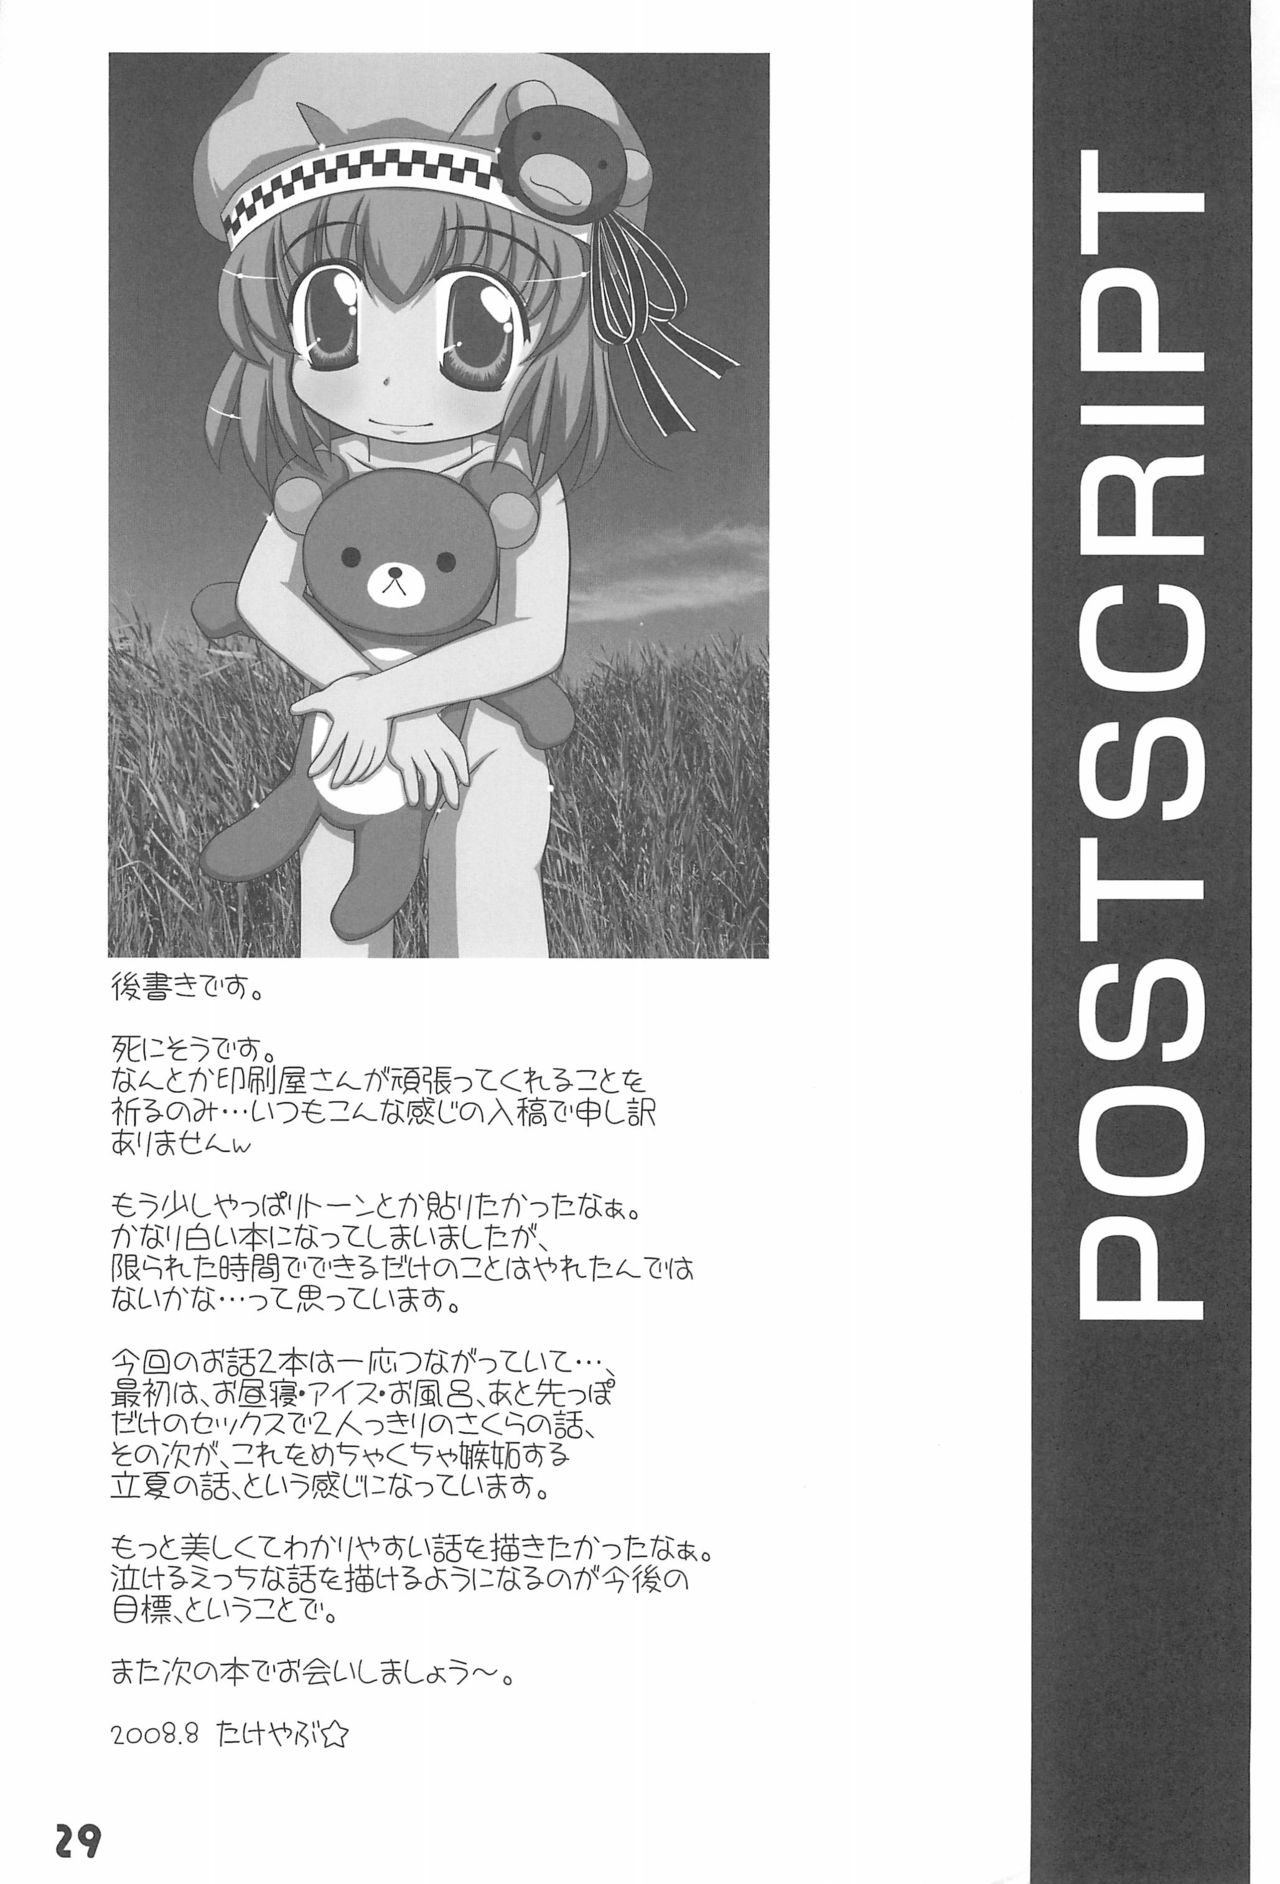 (C74) [はぁはぁWORKS (たけやぶ☆)] 7-16 (Baby Princess)